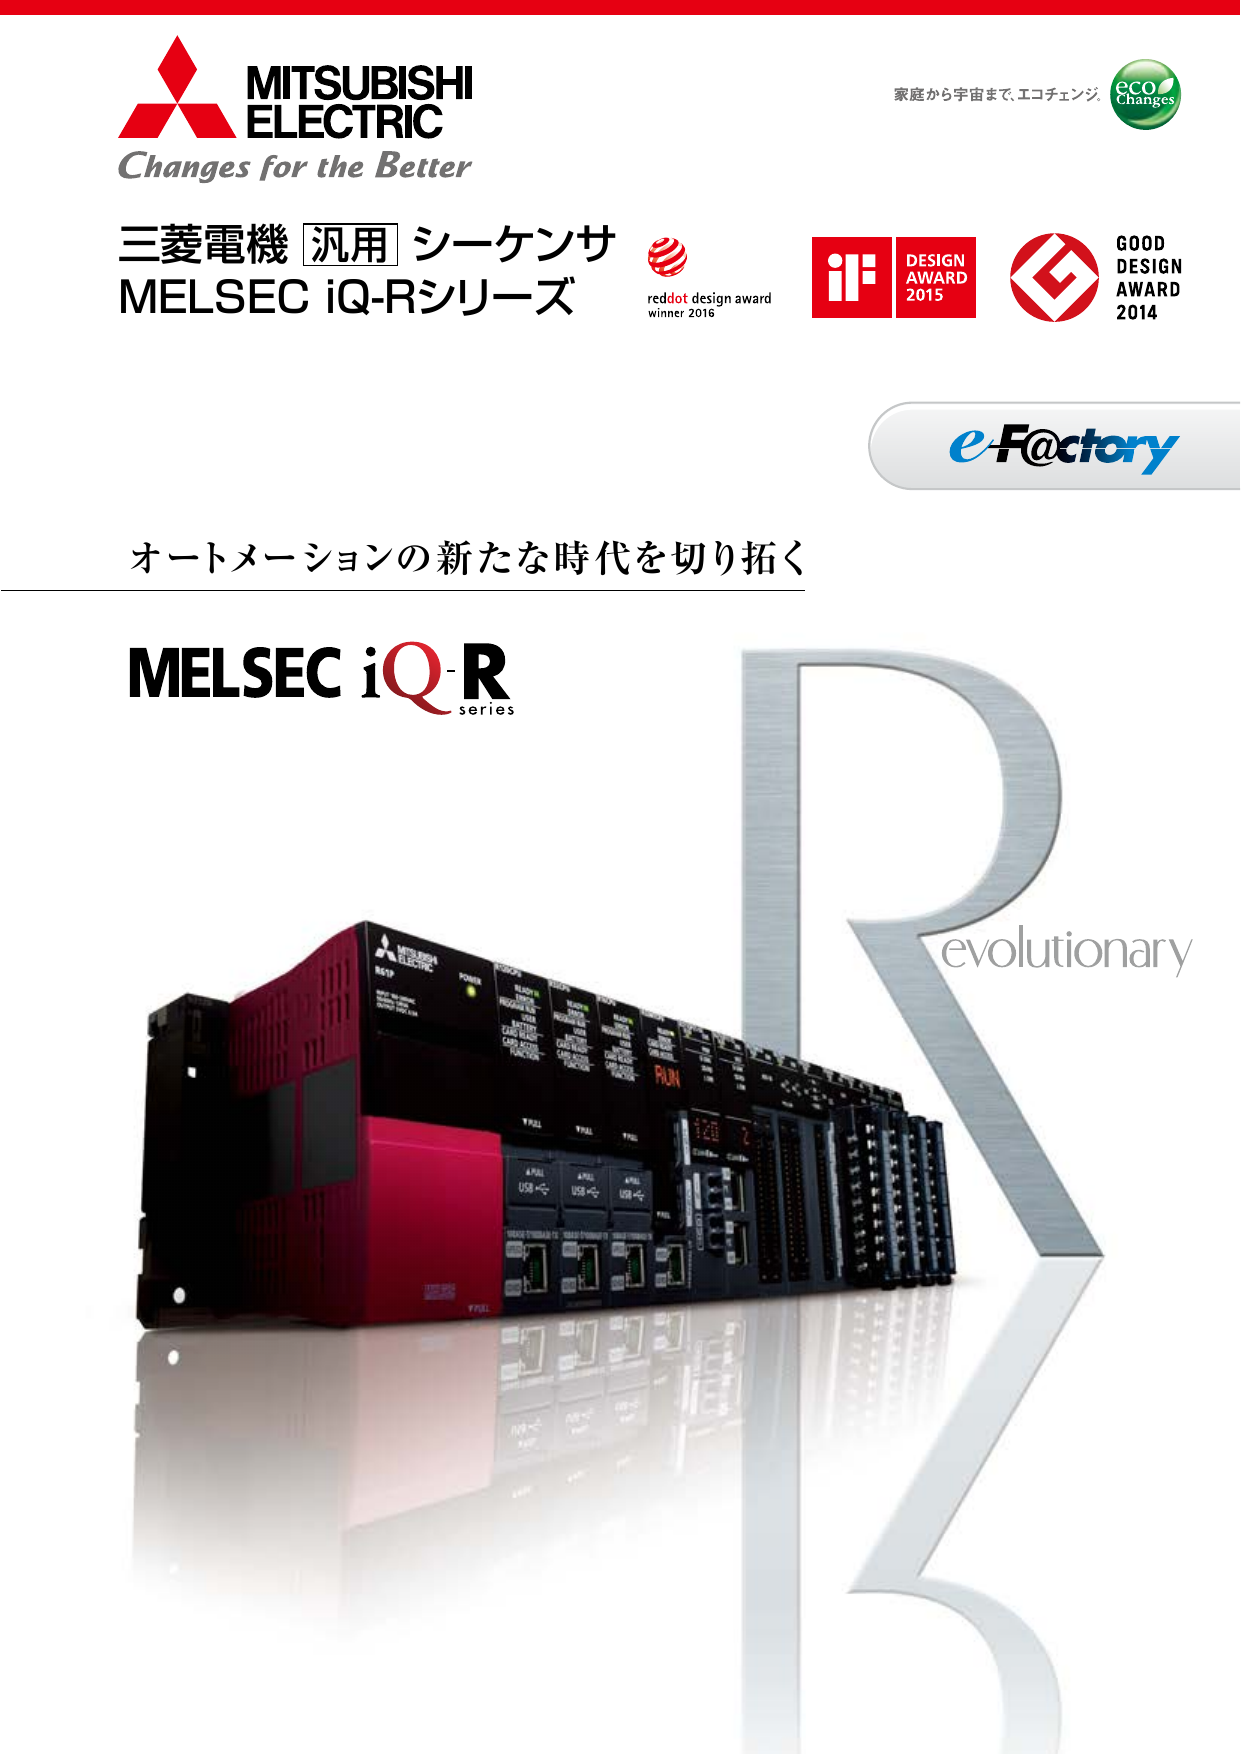 汎用 シーケンサ MELSEC iQ-Rシリーズ（三菱電機株式会社）のカタログ無料ダウンロード｜製造業向けカタログポータル Aperza Catalog（アペルザカタログ）